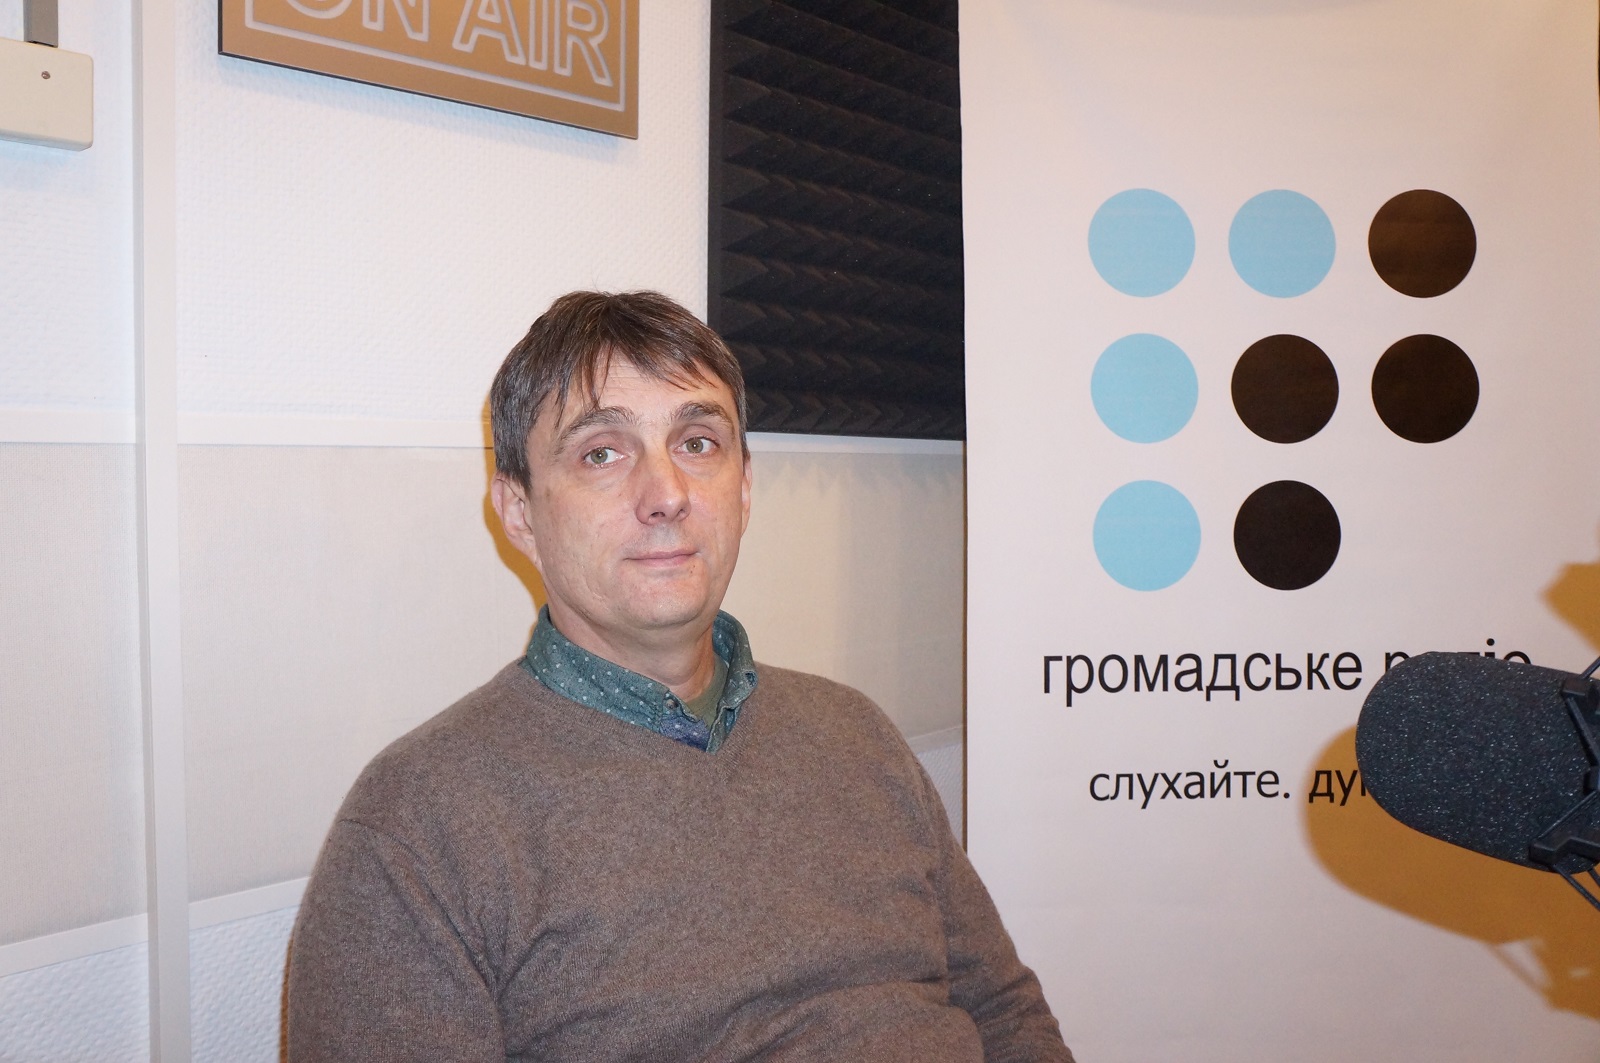 Существуют попытки сорвать тендеры в министерстве обороны, — Олег Свирко